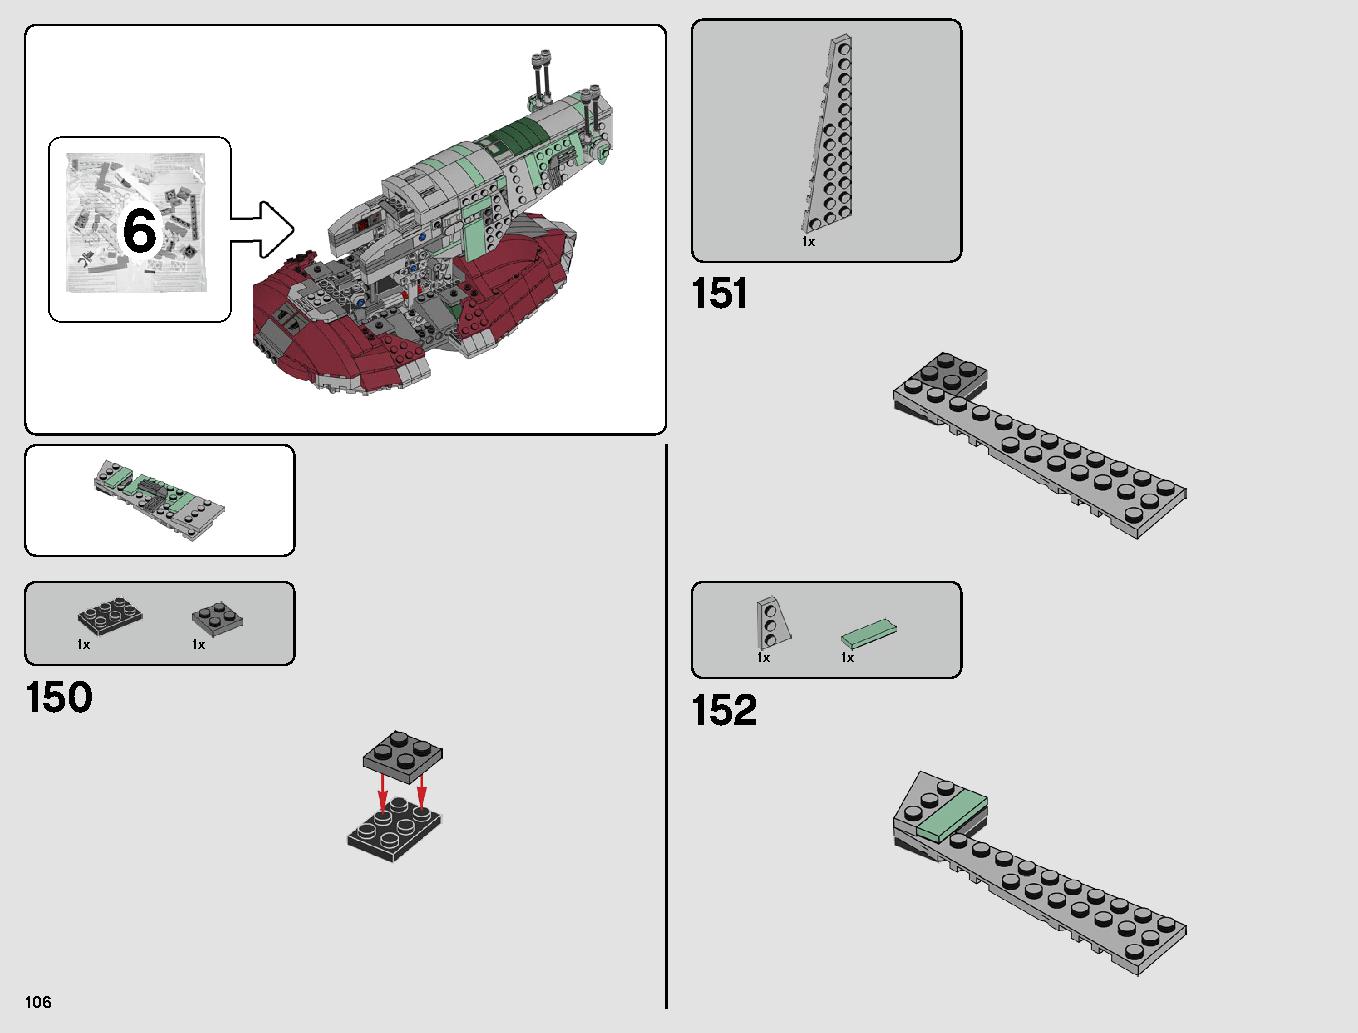 スレーヴl™ – 20周年記念モデル 75243 レゴの商品情報 レゴの説明書・組立方法 106 page